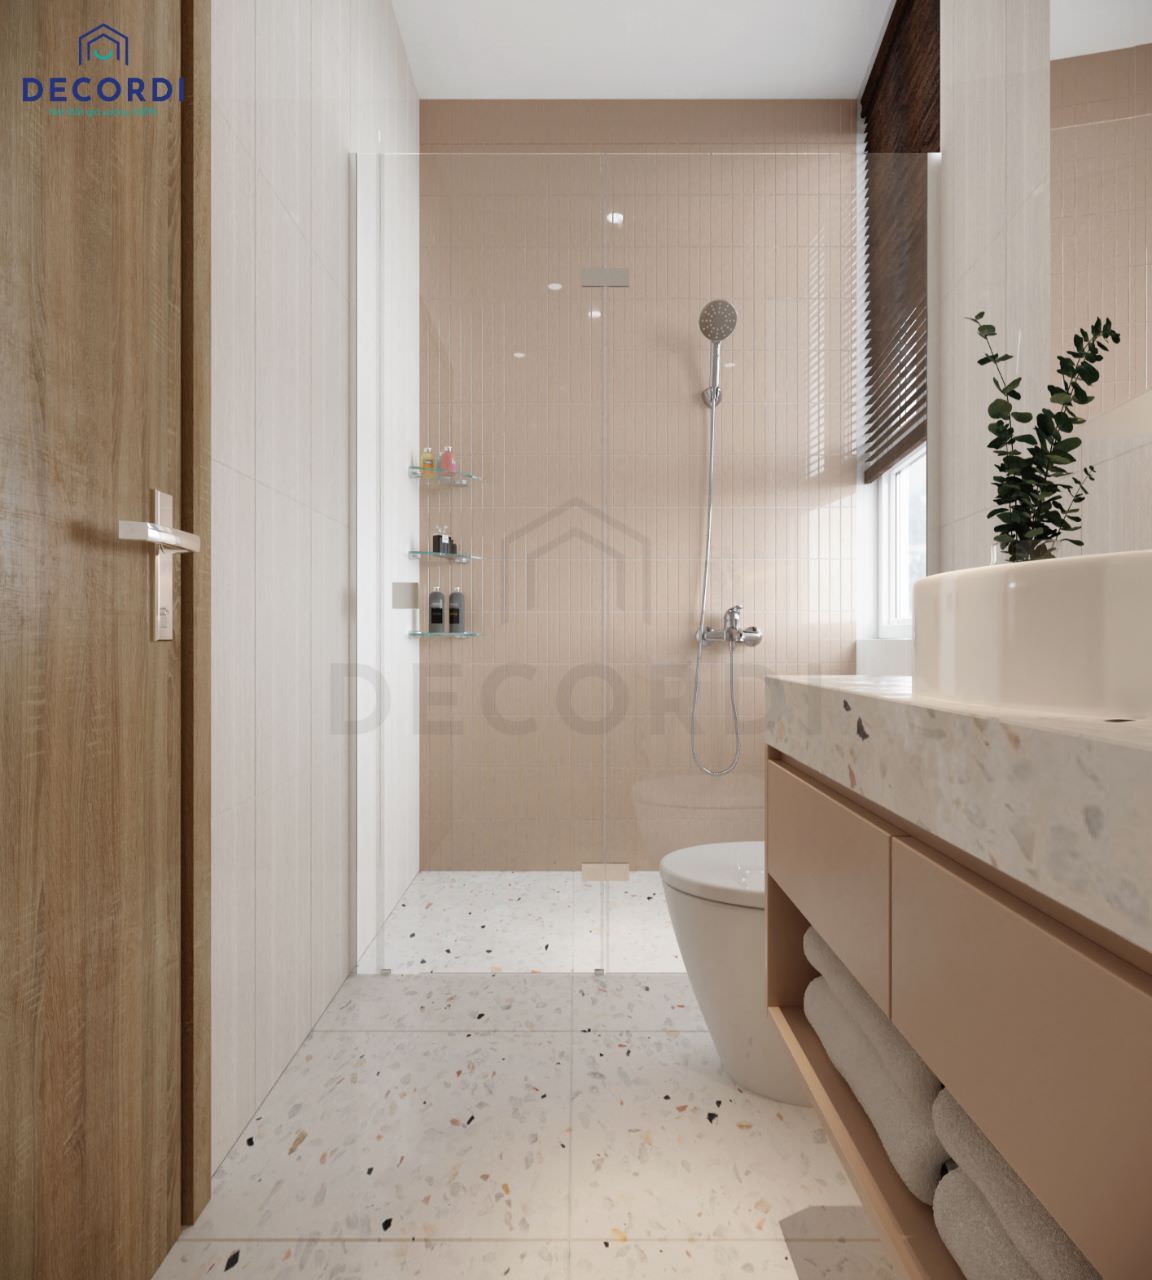 Thiết kế toilet với tông màu trung tính nhẹ nhàng kết hợp đá ốp sàn hoa cương màu trắng đem lại không gian dễ chịu cho gia chủ